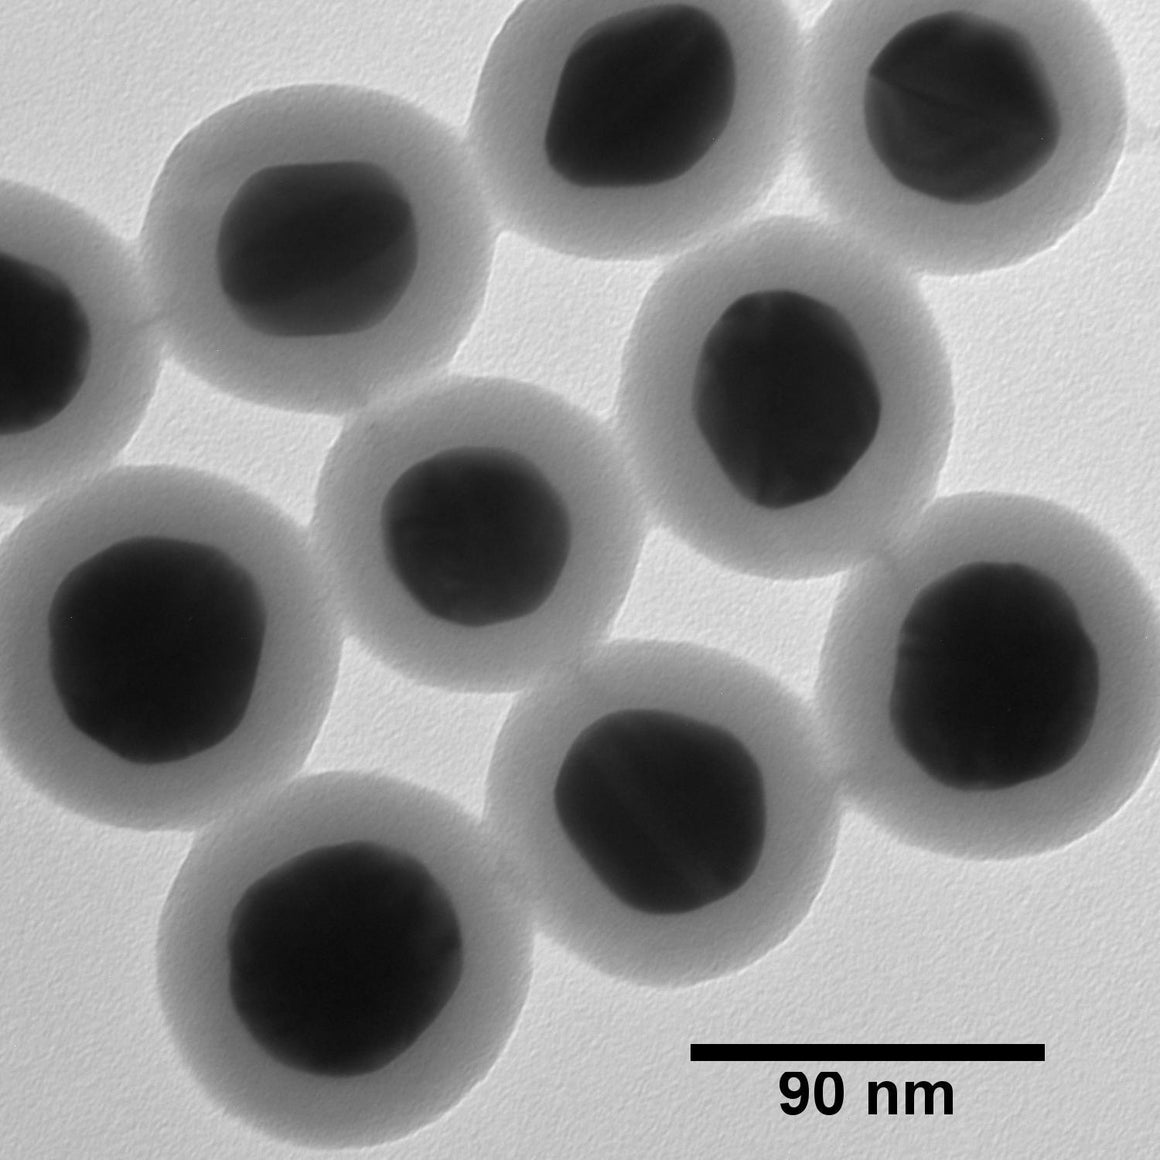 NanoXact Gold Nanospheres – Silica Shelled